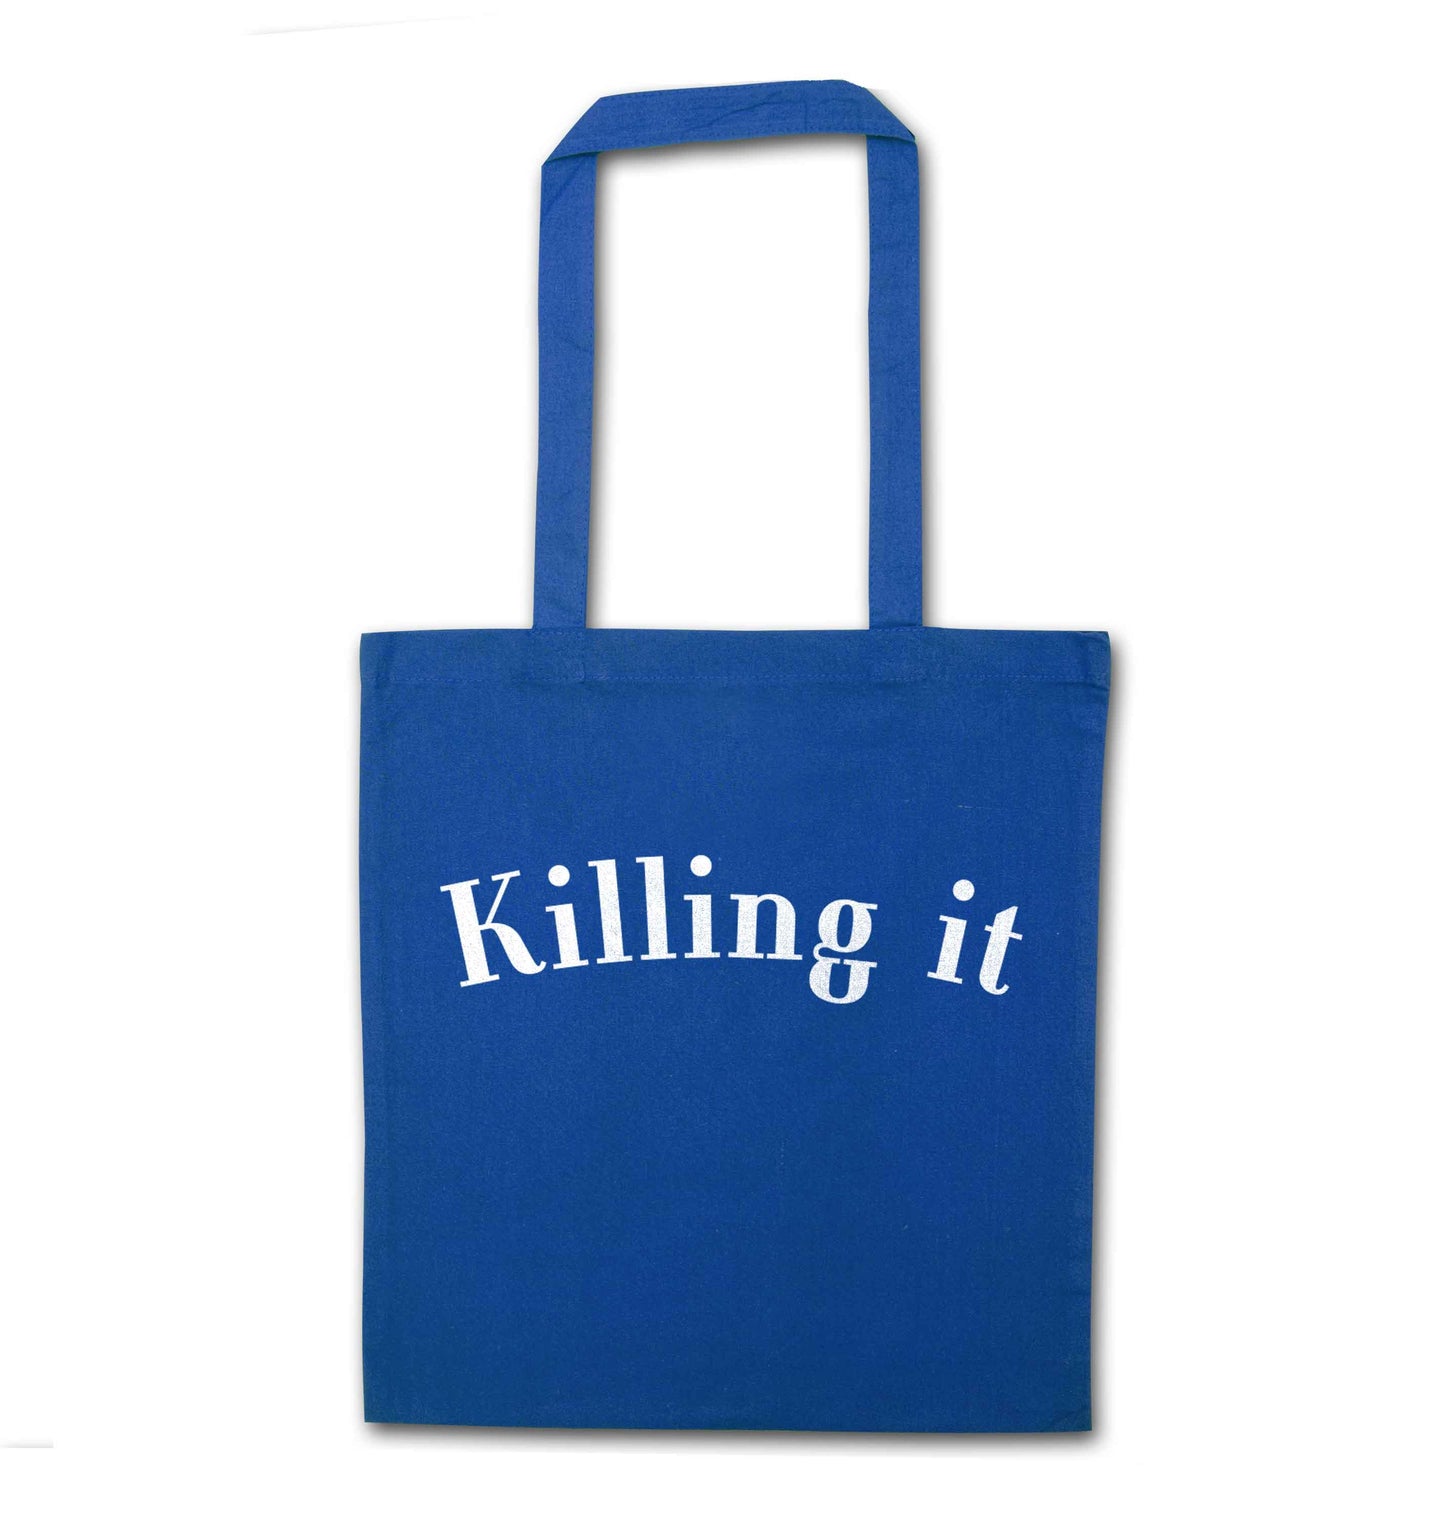 Killing it blue tote bag